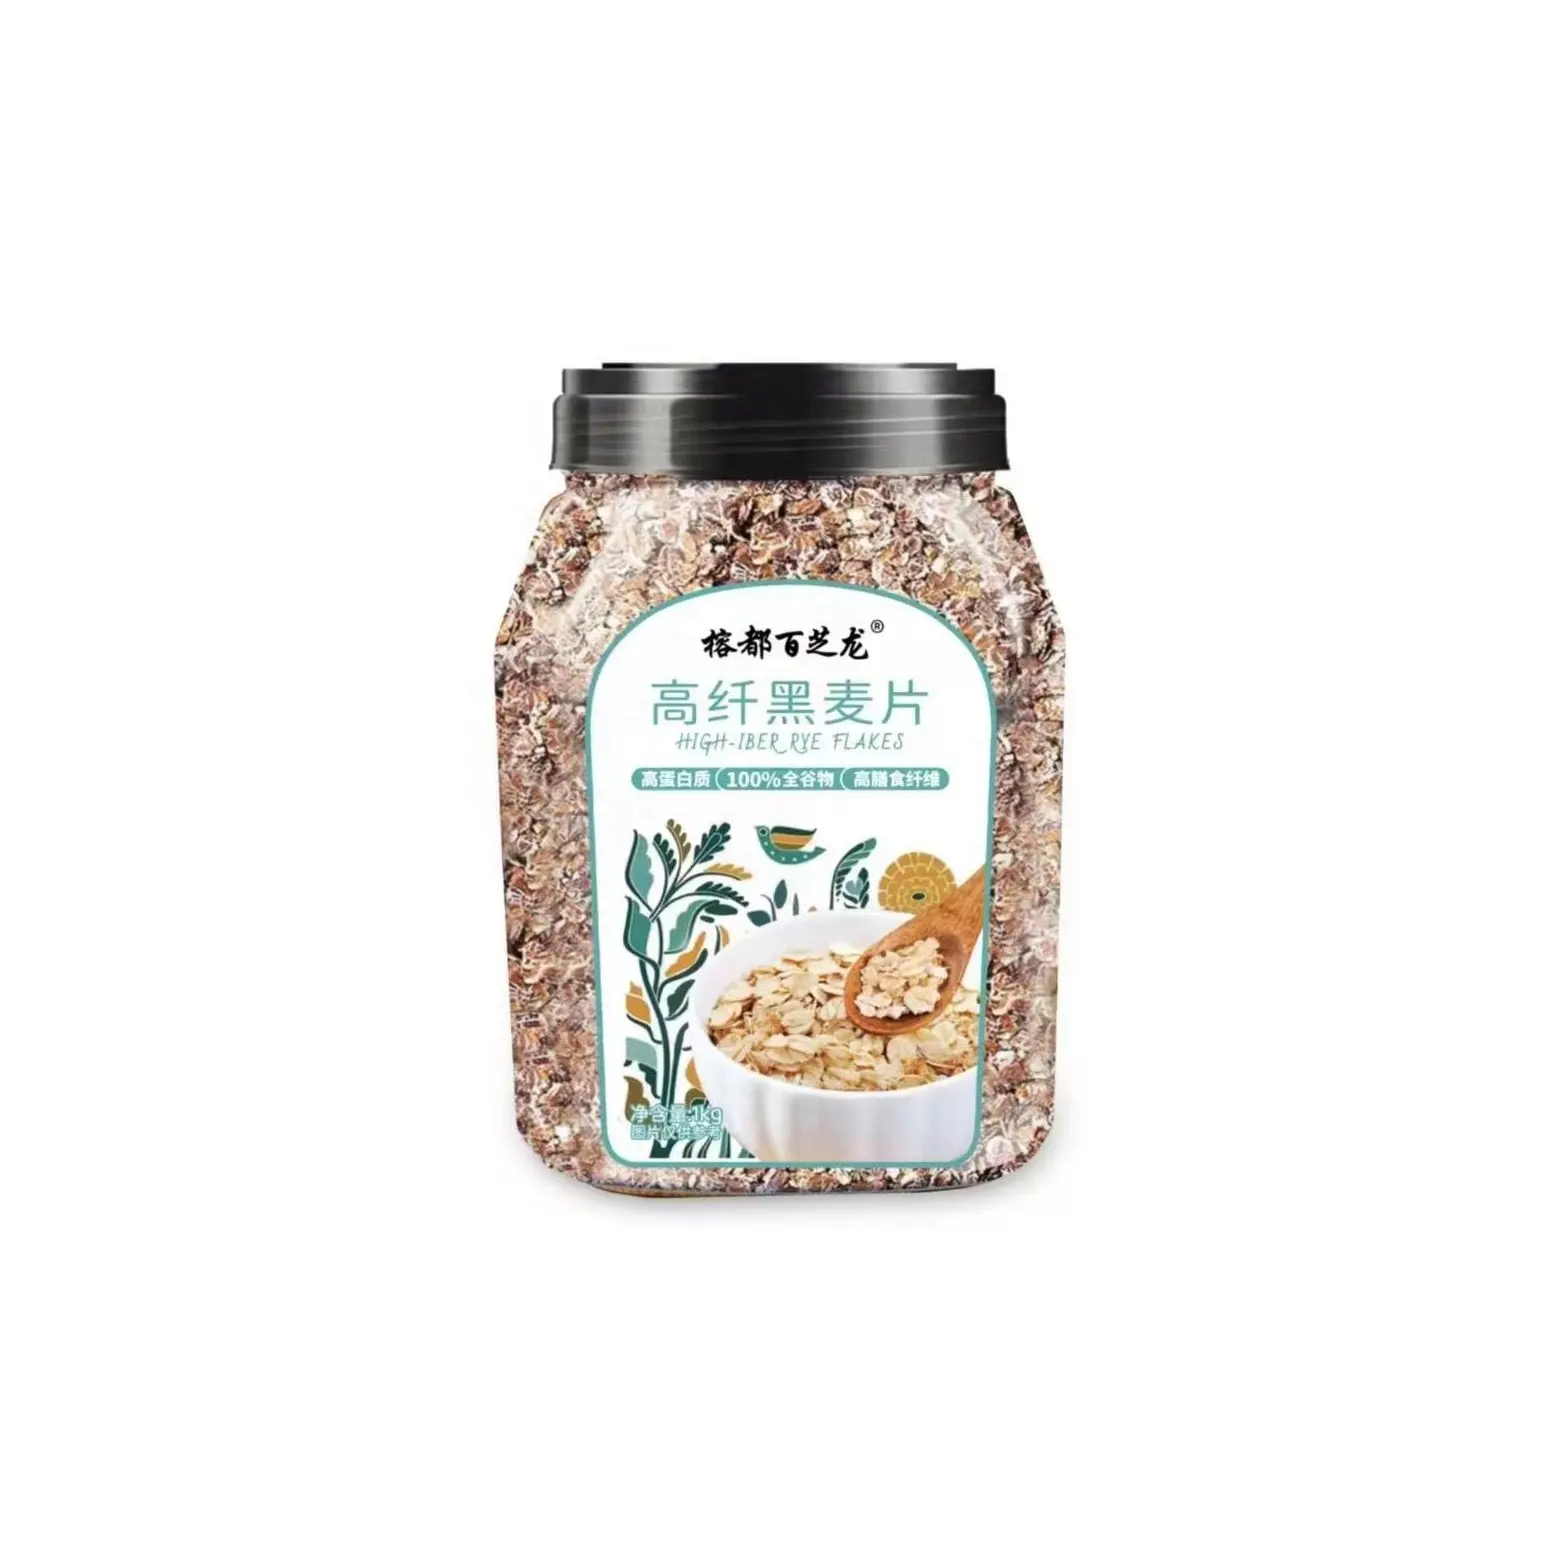 Instant cereal Nutritious healthy Low fat high fiber Black oats Granola Muesli Grain